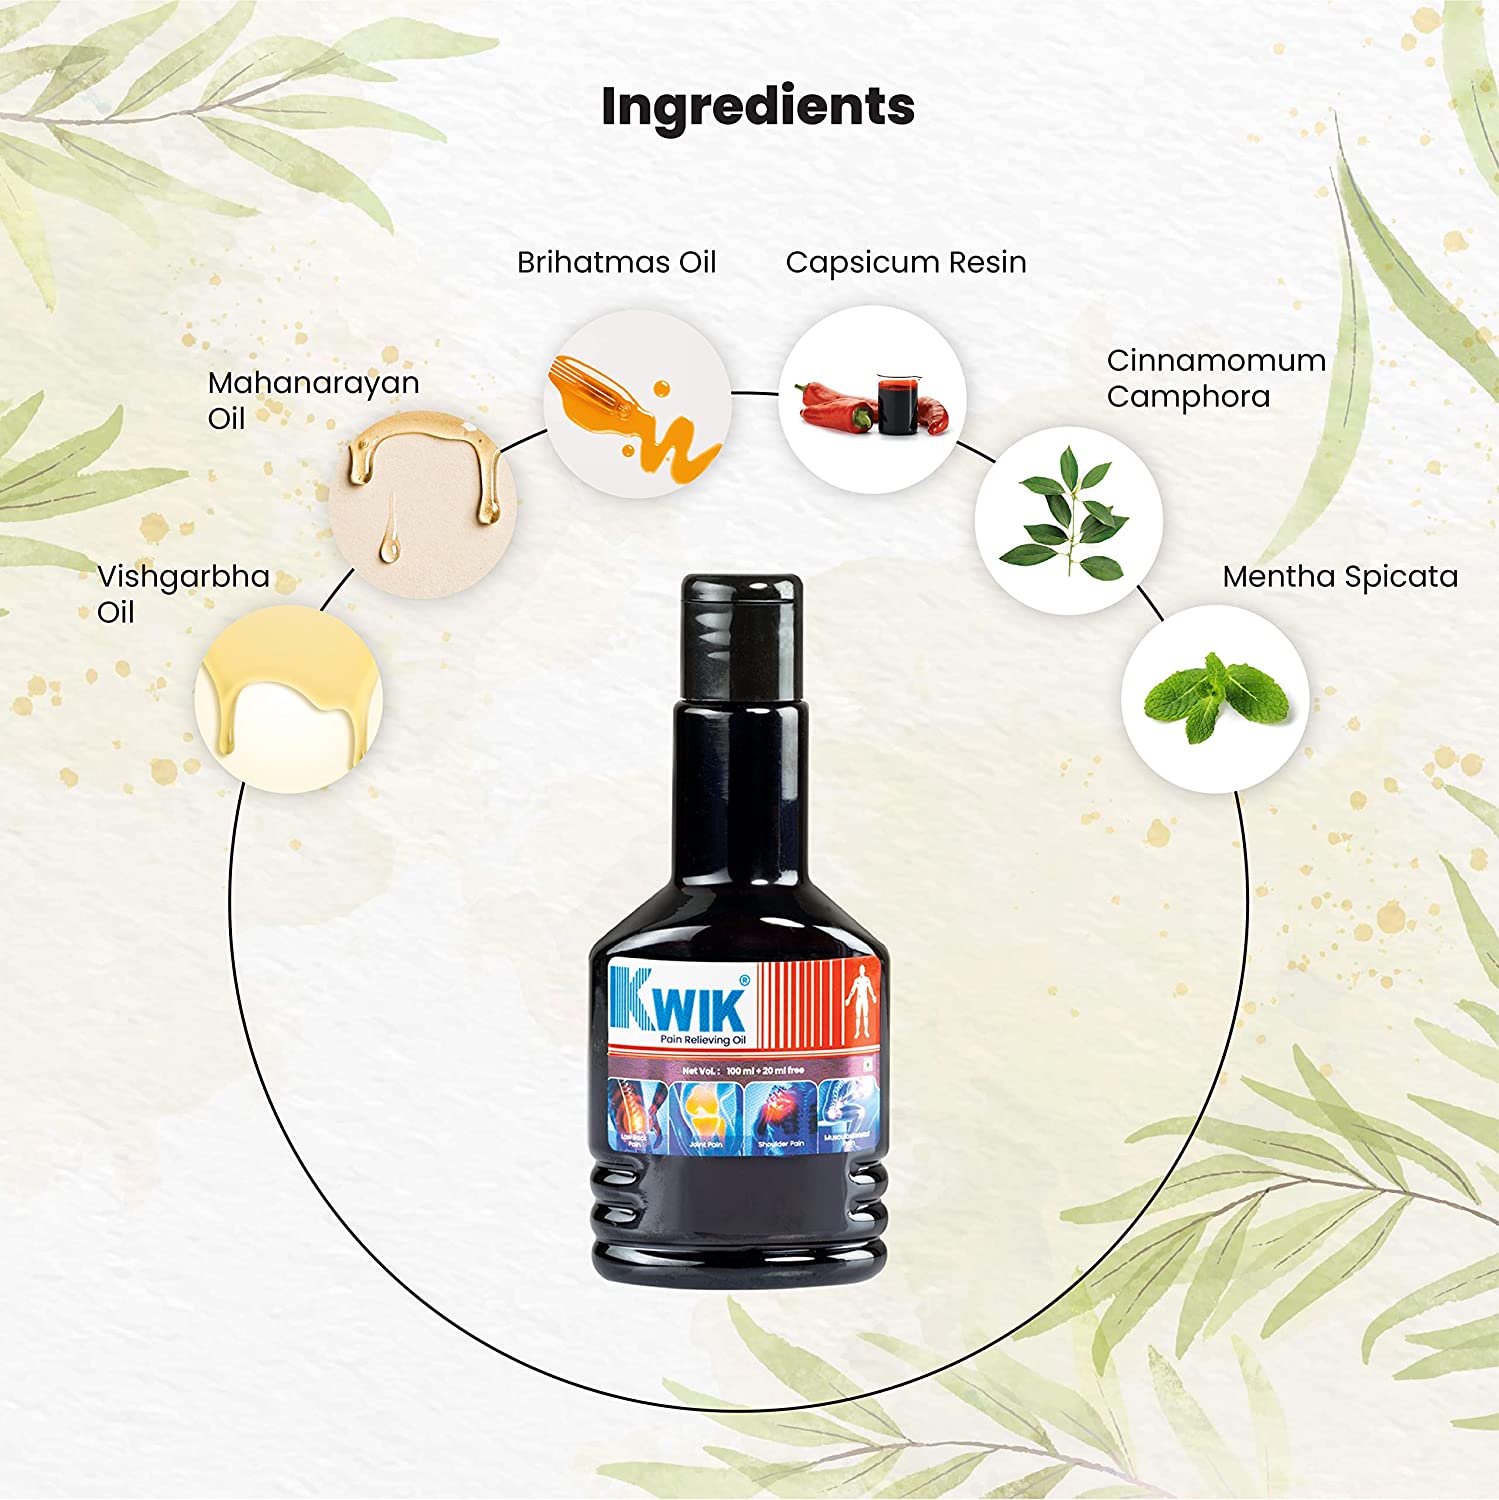 Highlighting Kwik Oil ingredients